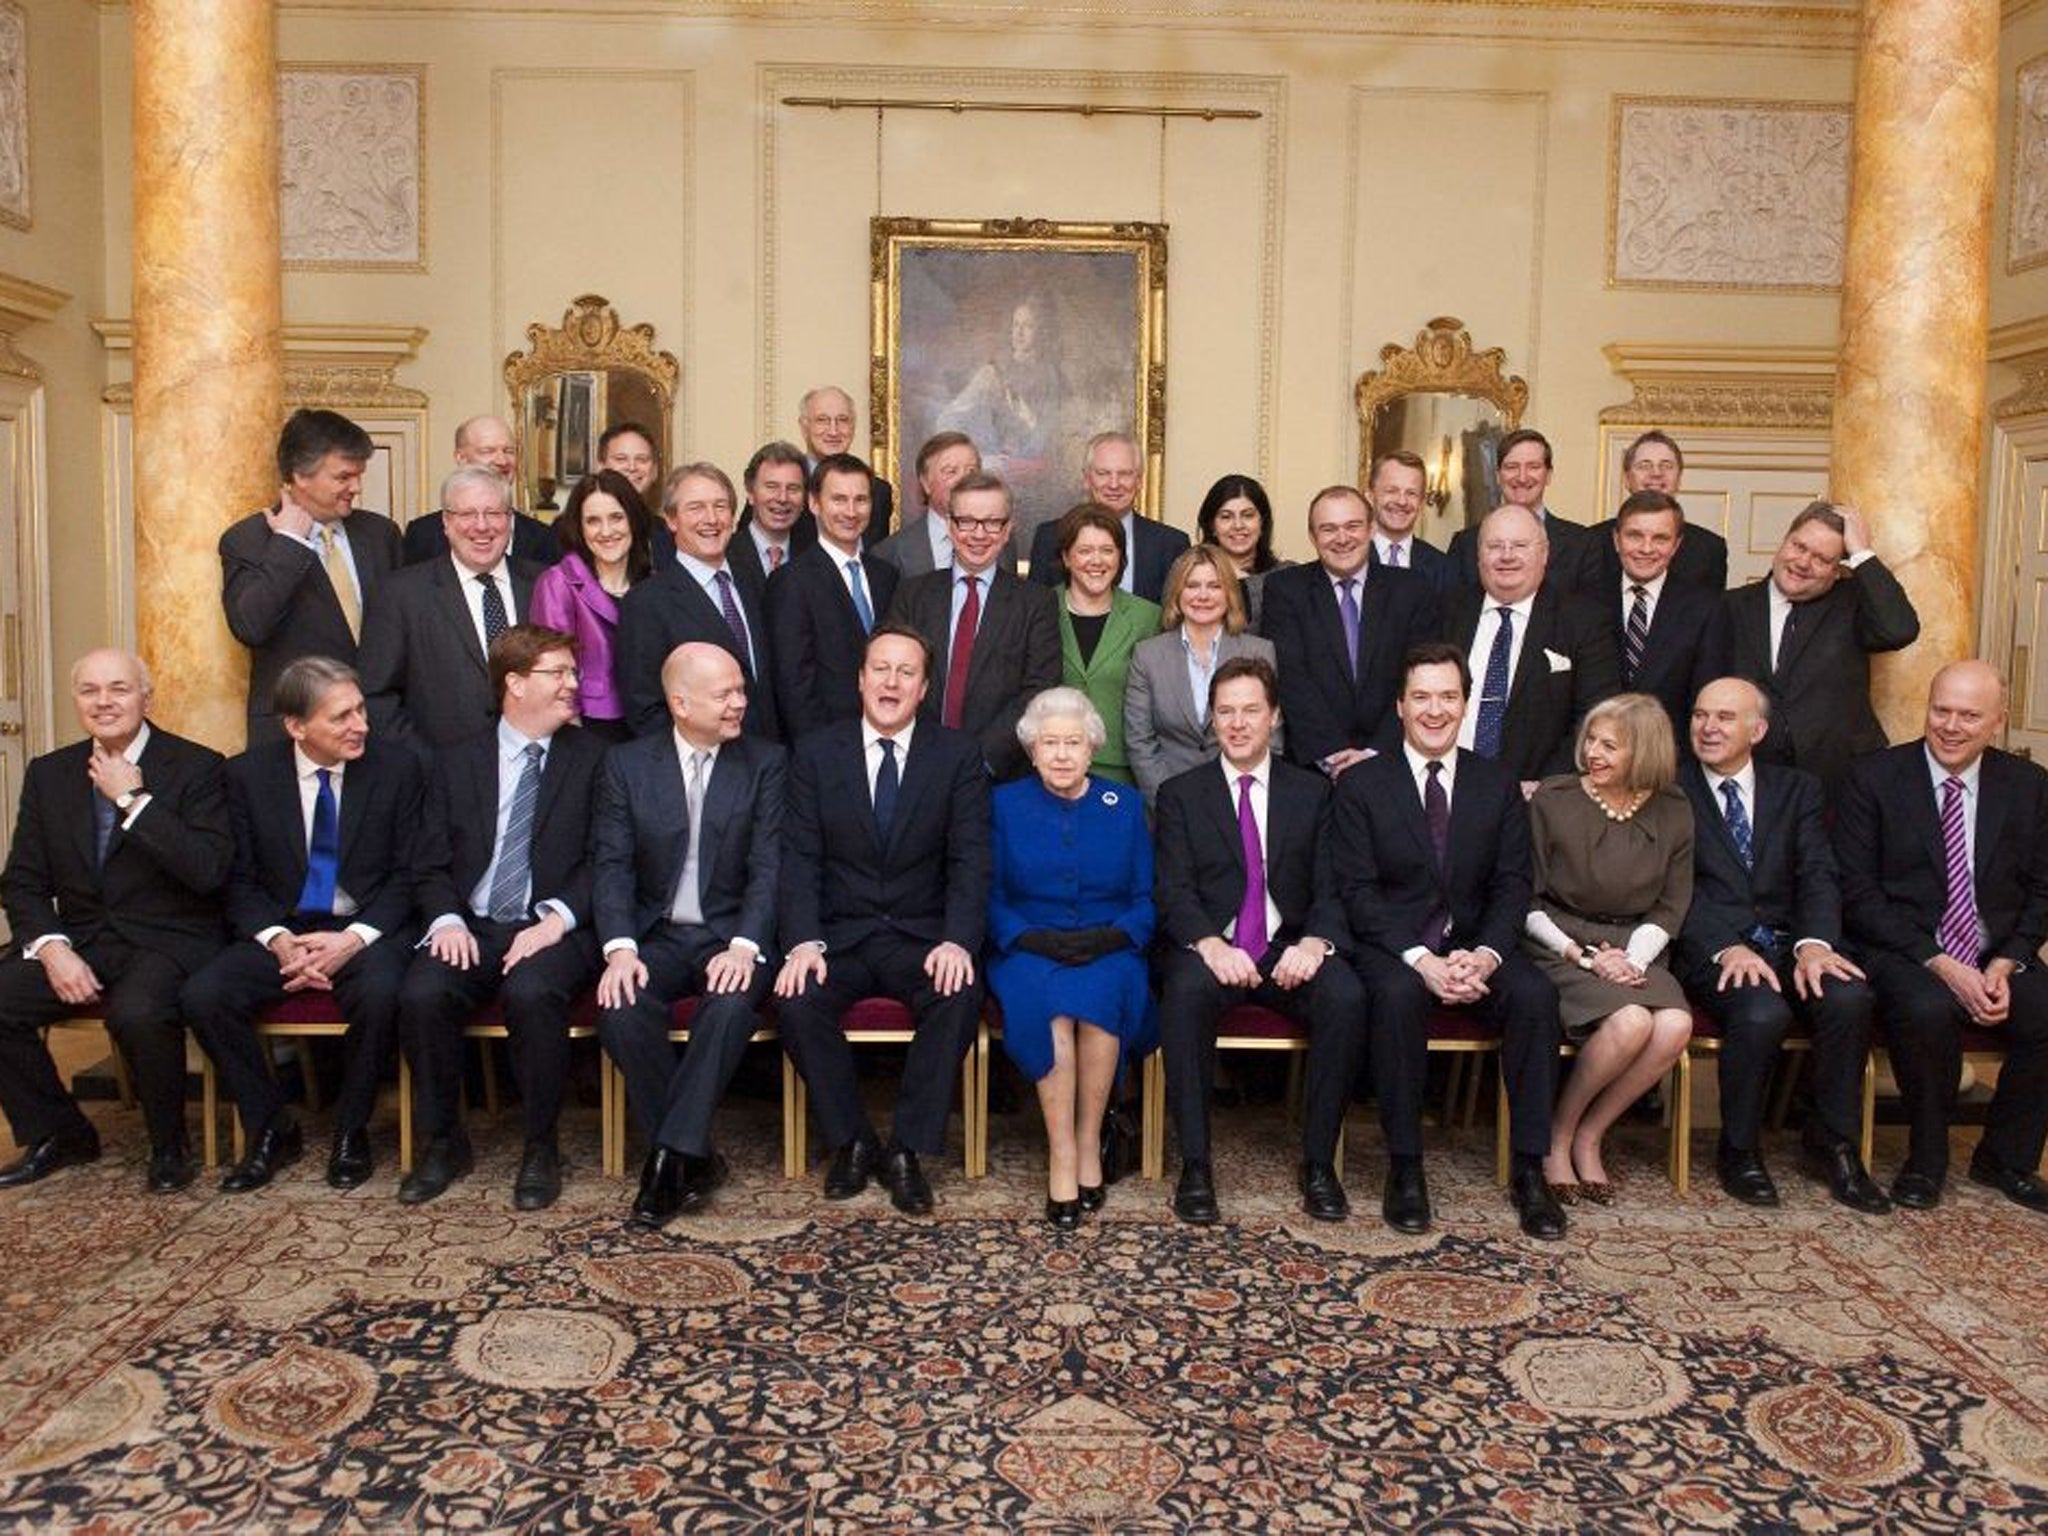 Премьер министр королевы. Правительство Великобритании Дэвид Кэмерон. Кабинет министров Великобритании 2020. Заседание правительства Великобритании Дэвид Кэмерон. Королева Великобритании в правительстве.